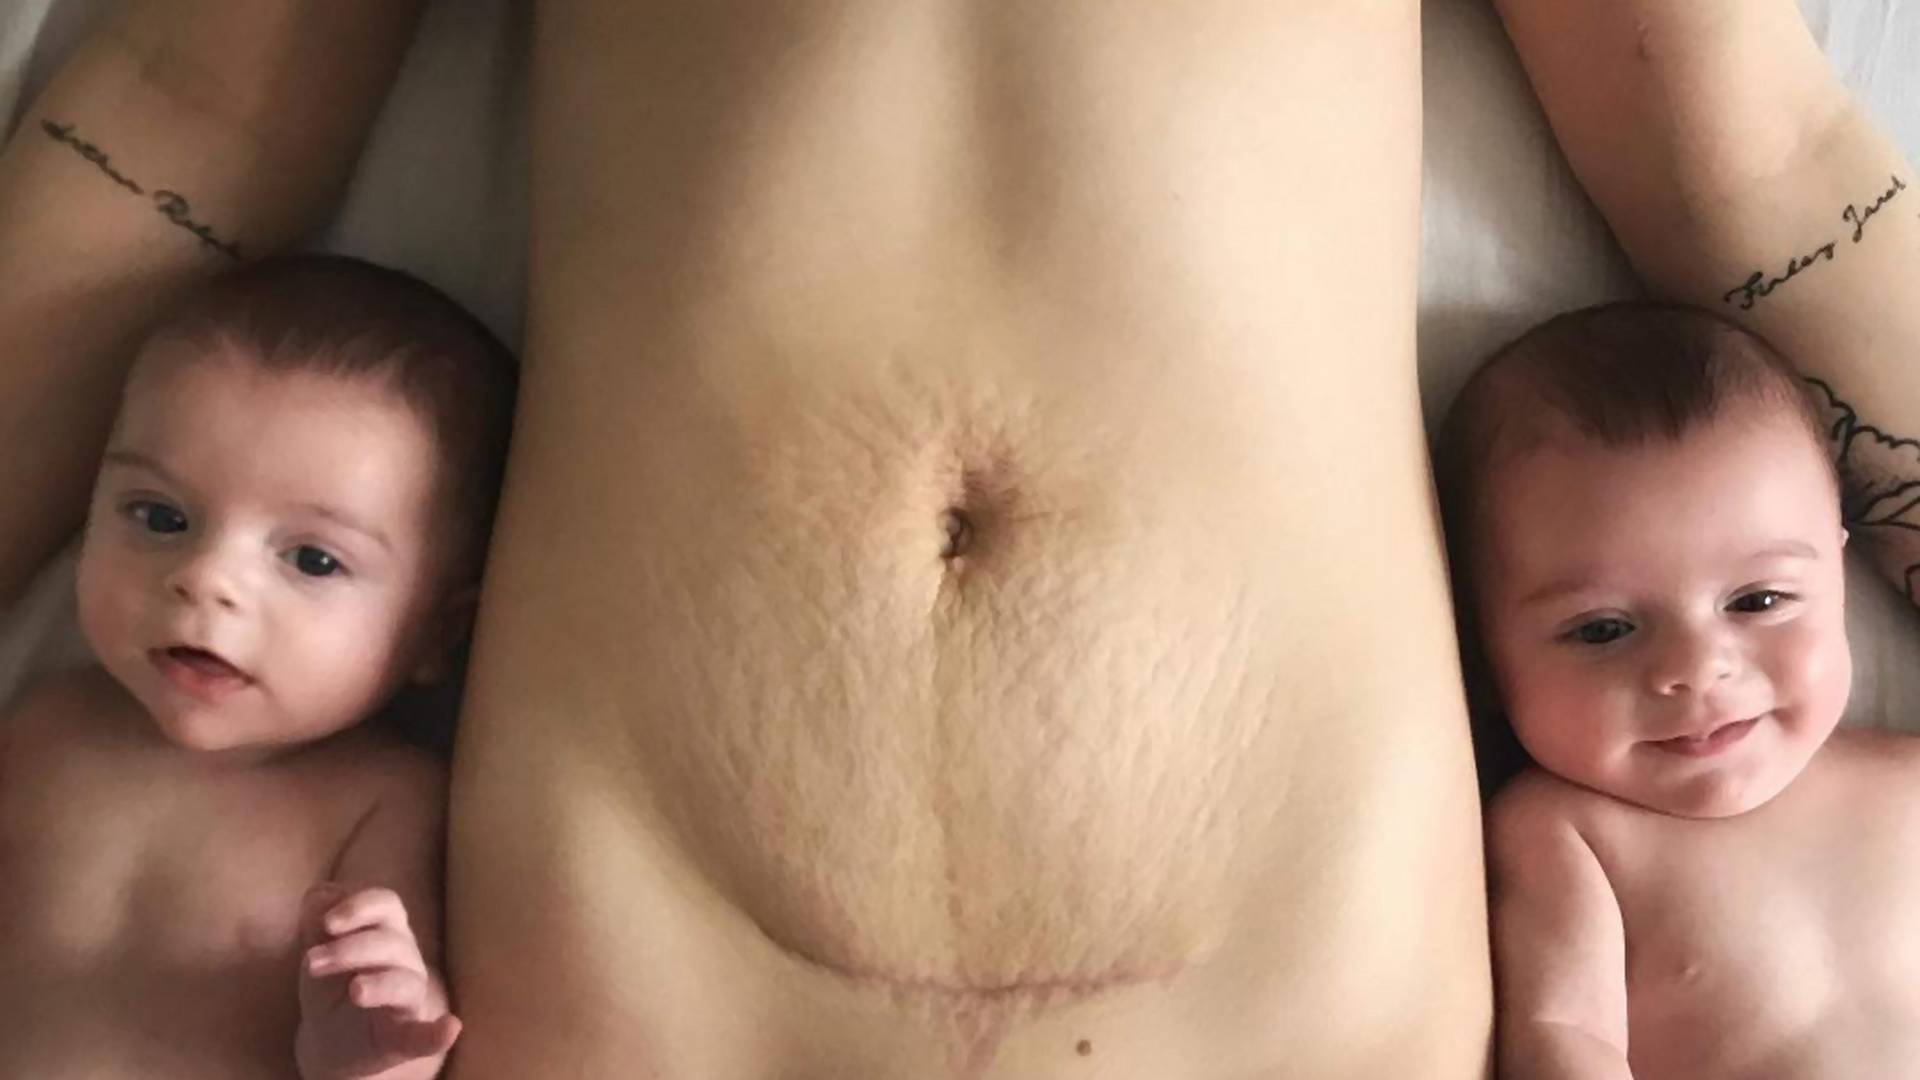 Nastoletnia mama pokazuje ciało 4 miesiące po porodzie - "jestem z siebie dumna"